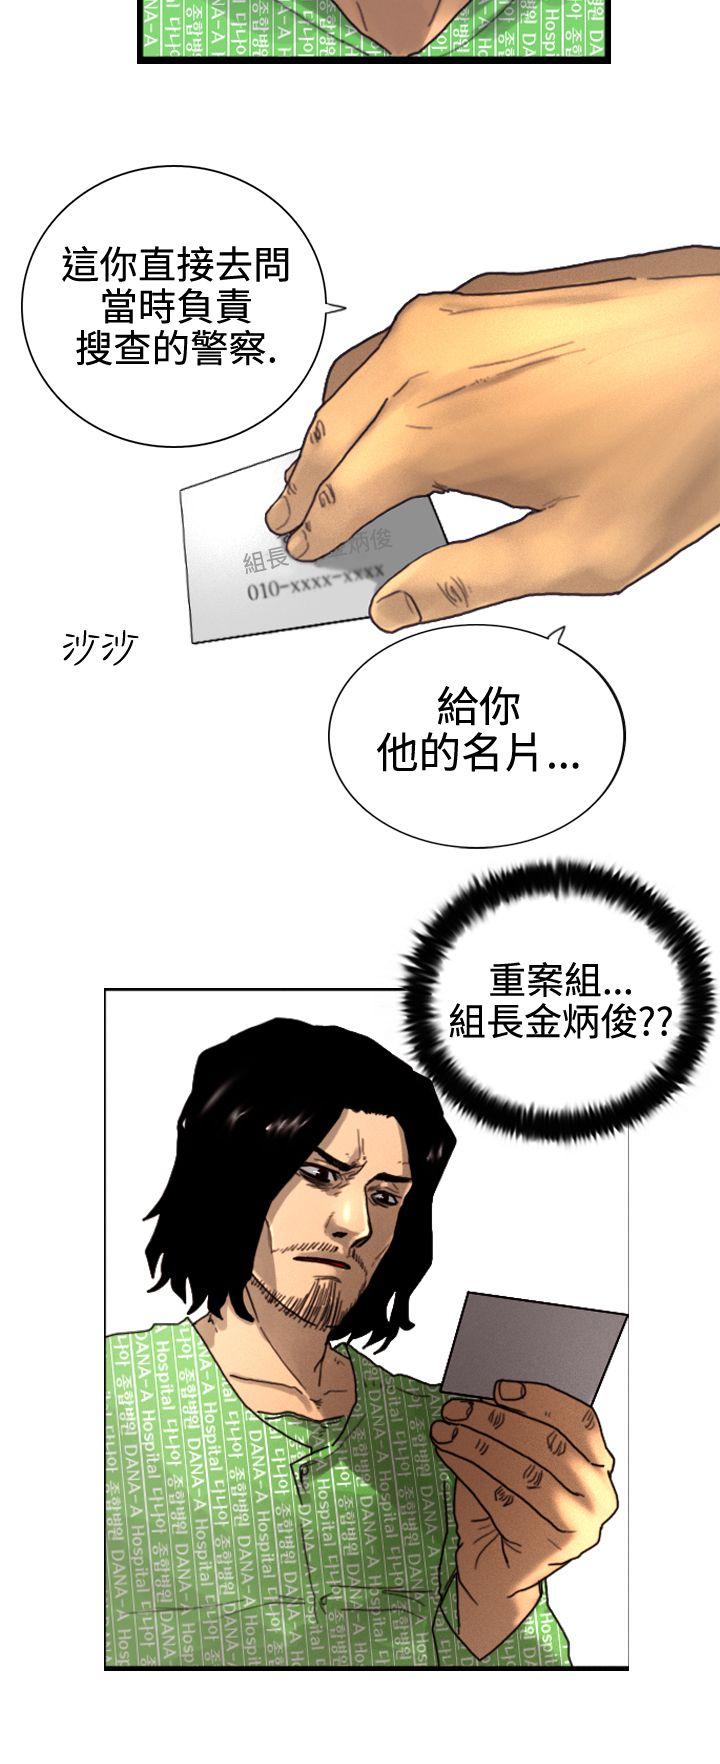 韩国污漫画 覺醒 第3话微动 8